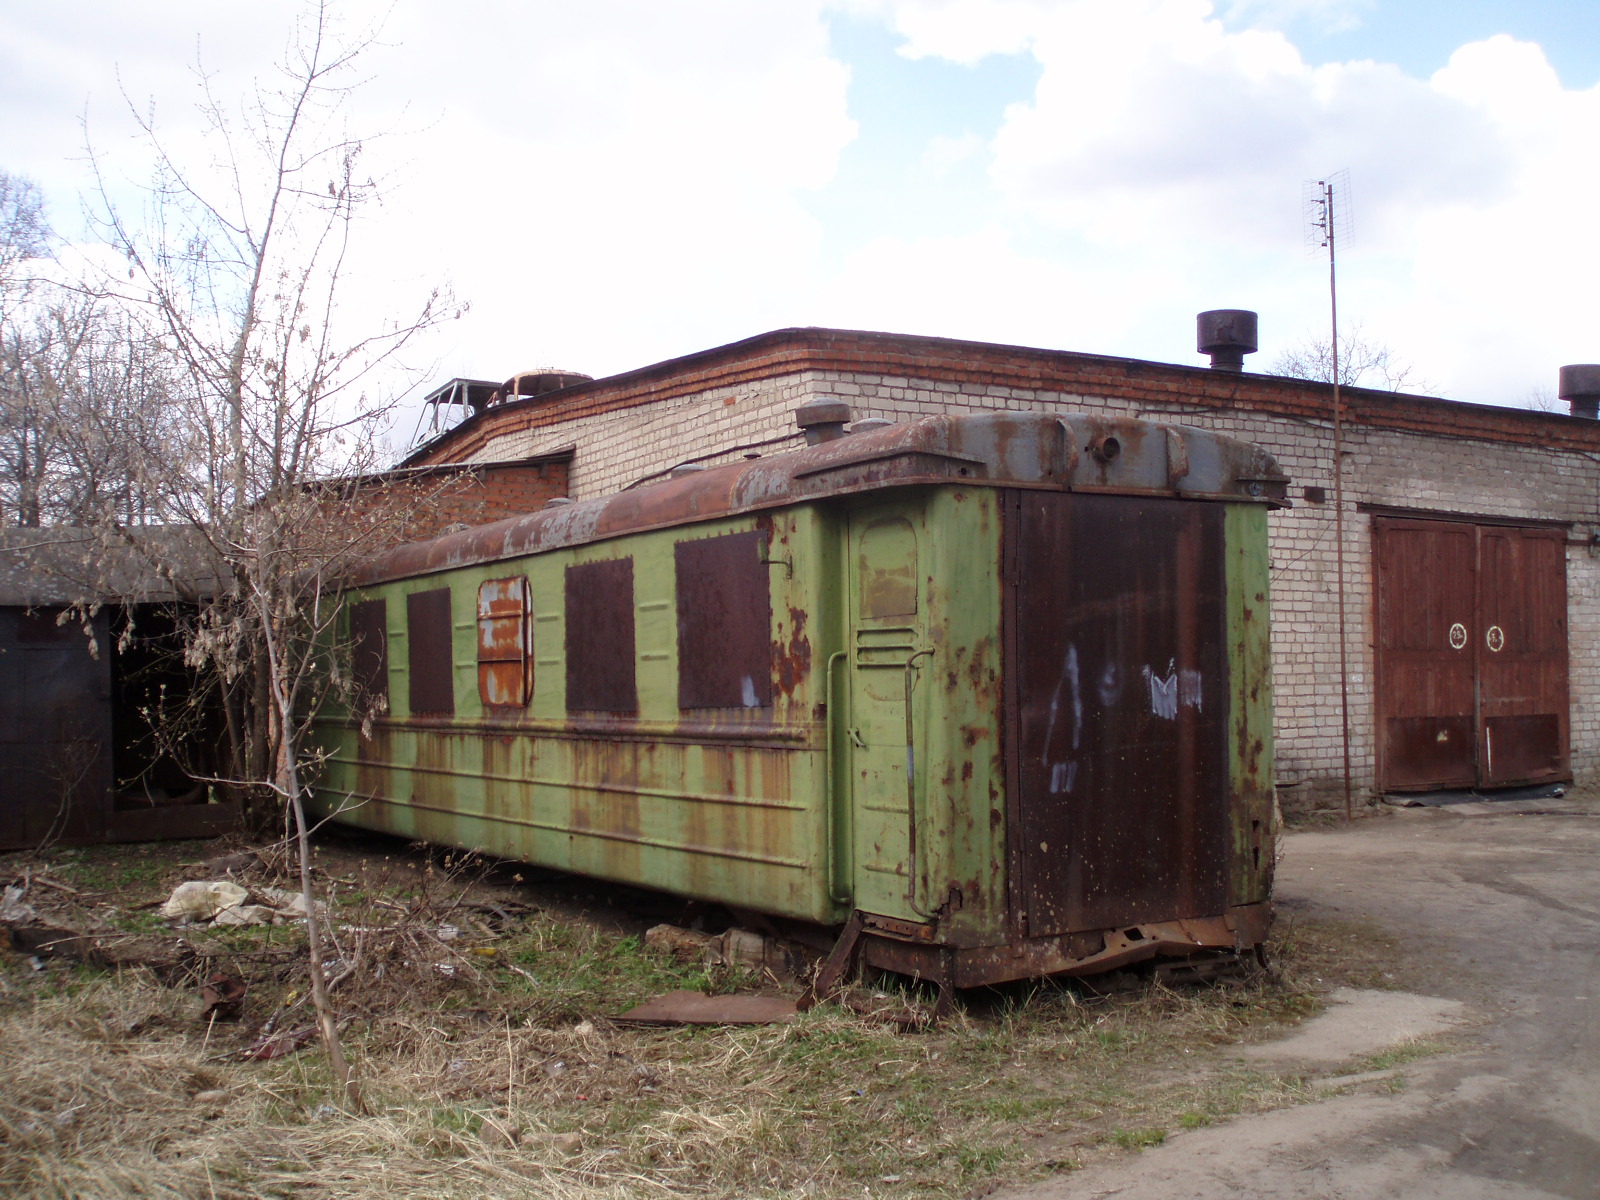 Узкоколейная железная дорога Комсомольского транспортного управления - фотографии, сделанные в 2007 году (часть 1)